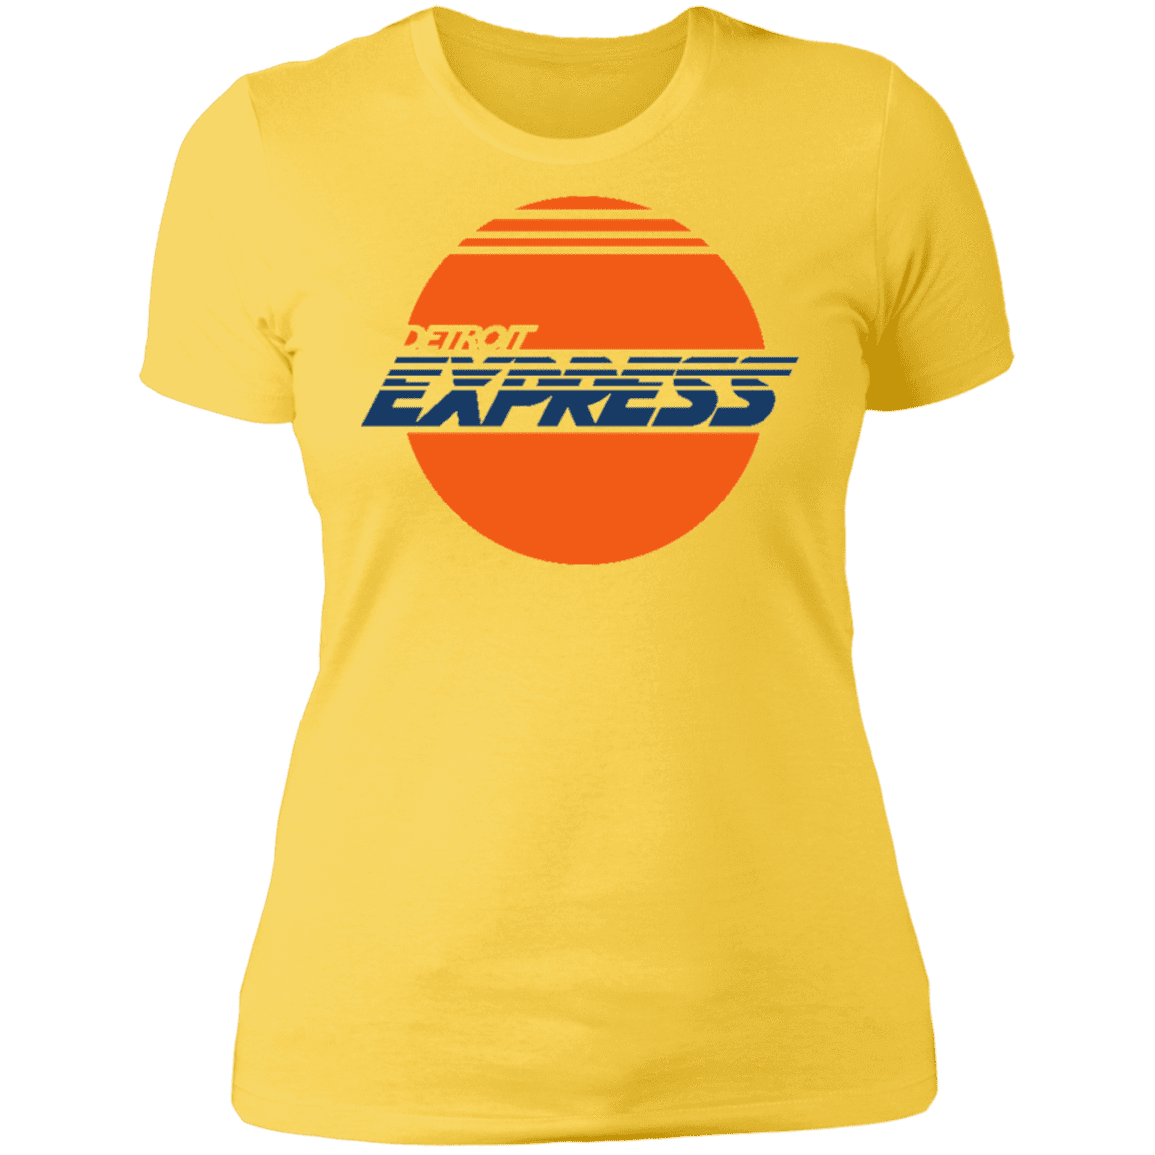 detroit express jersey